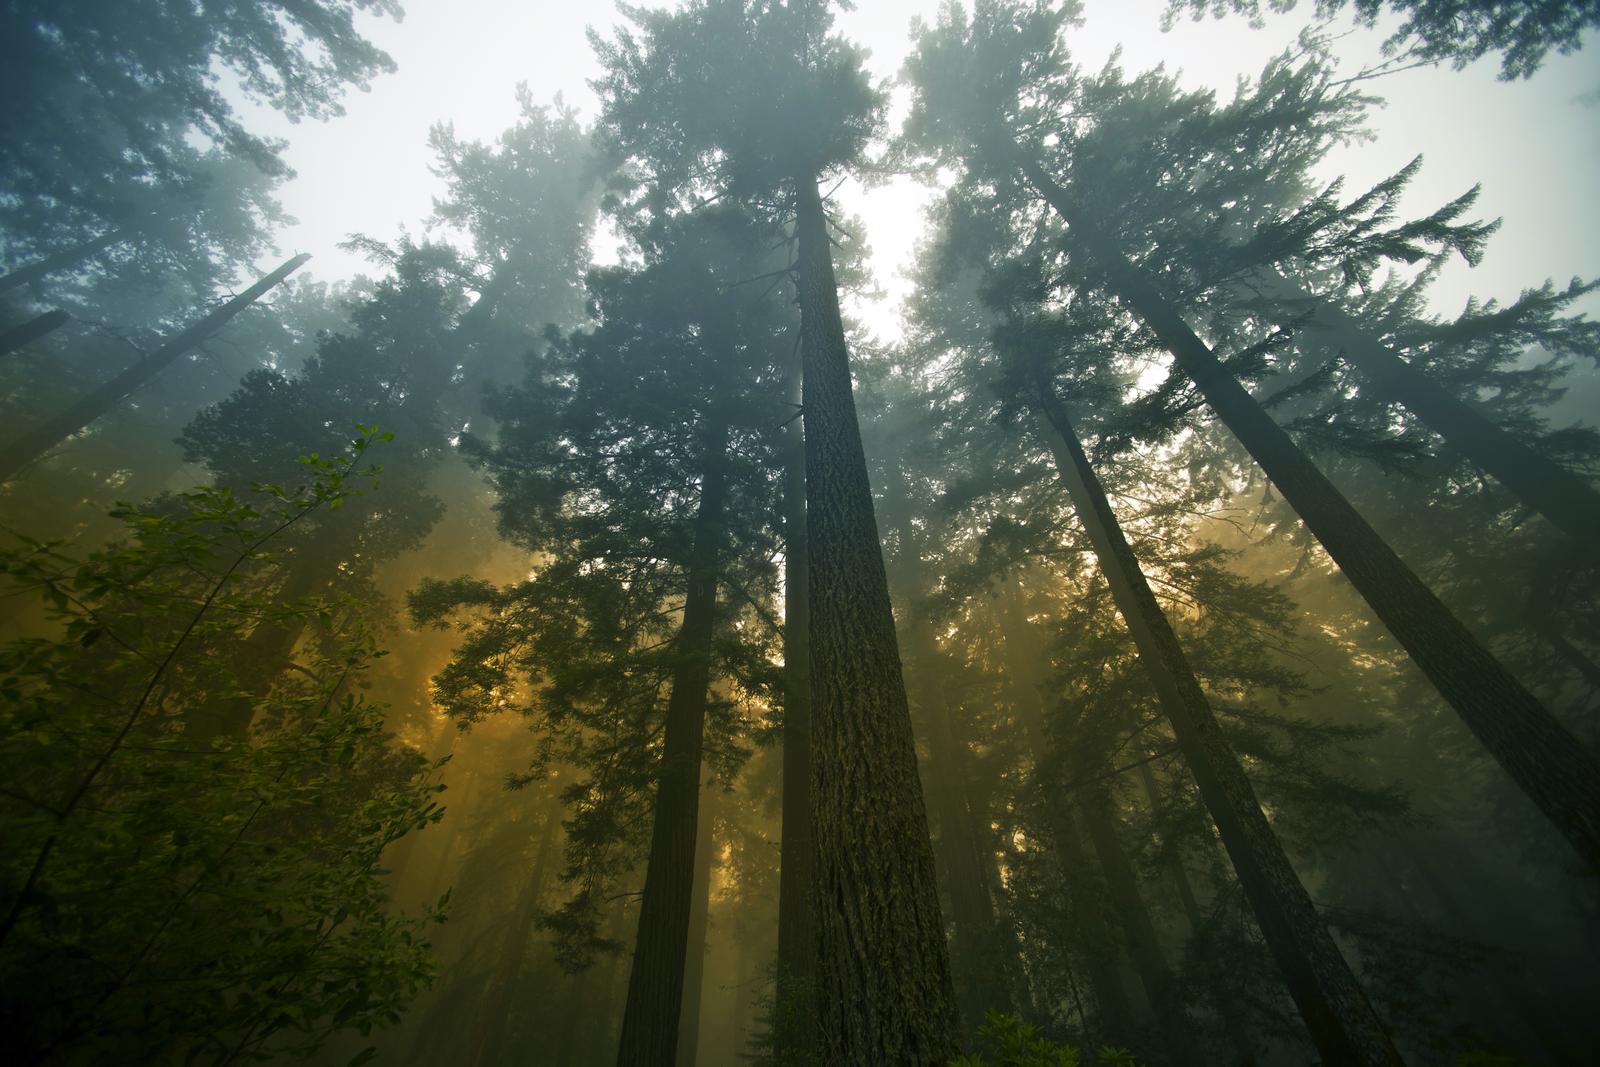 KESKÜHISTU ERAMETS TÜH - Metsaühistud on loodud metsaomanike poolt selleks, et hoida sinu metsal silma peal, teavitavad...